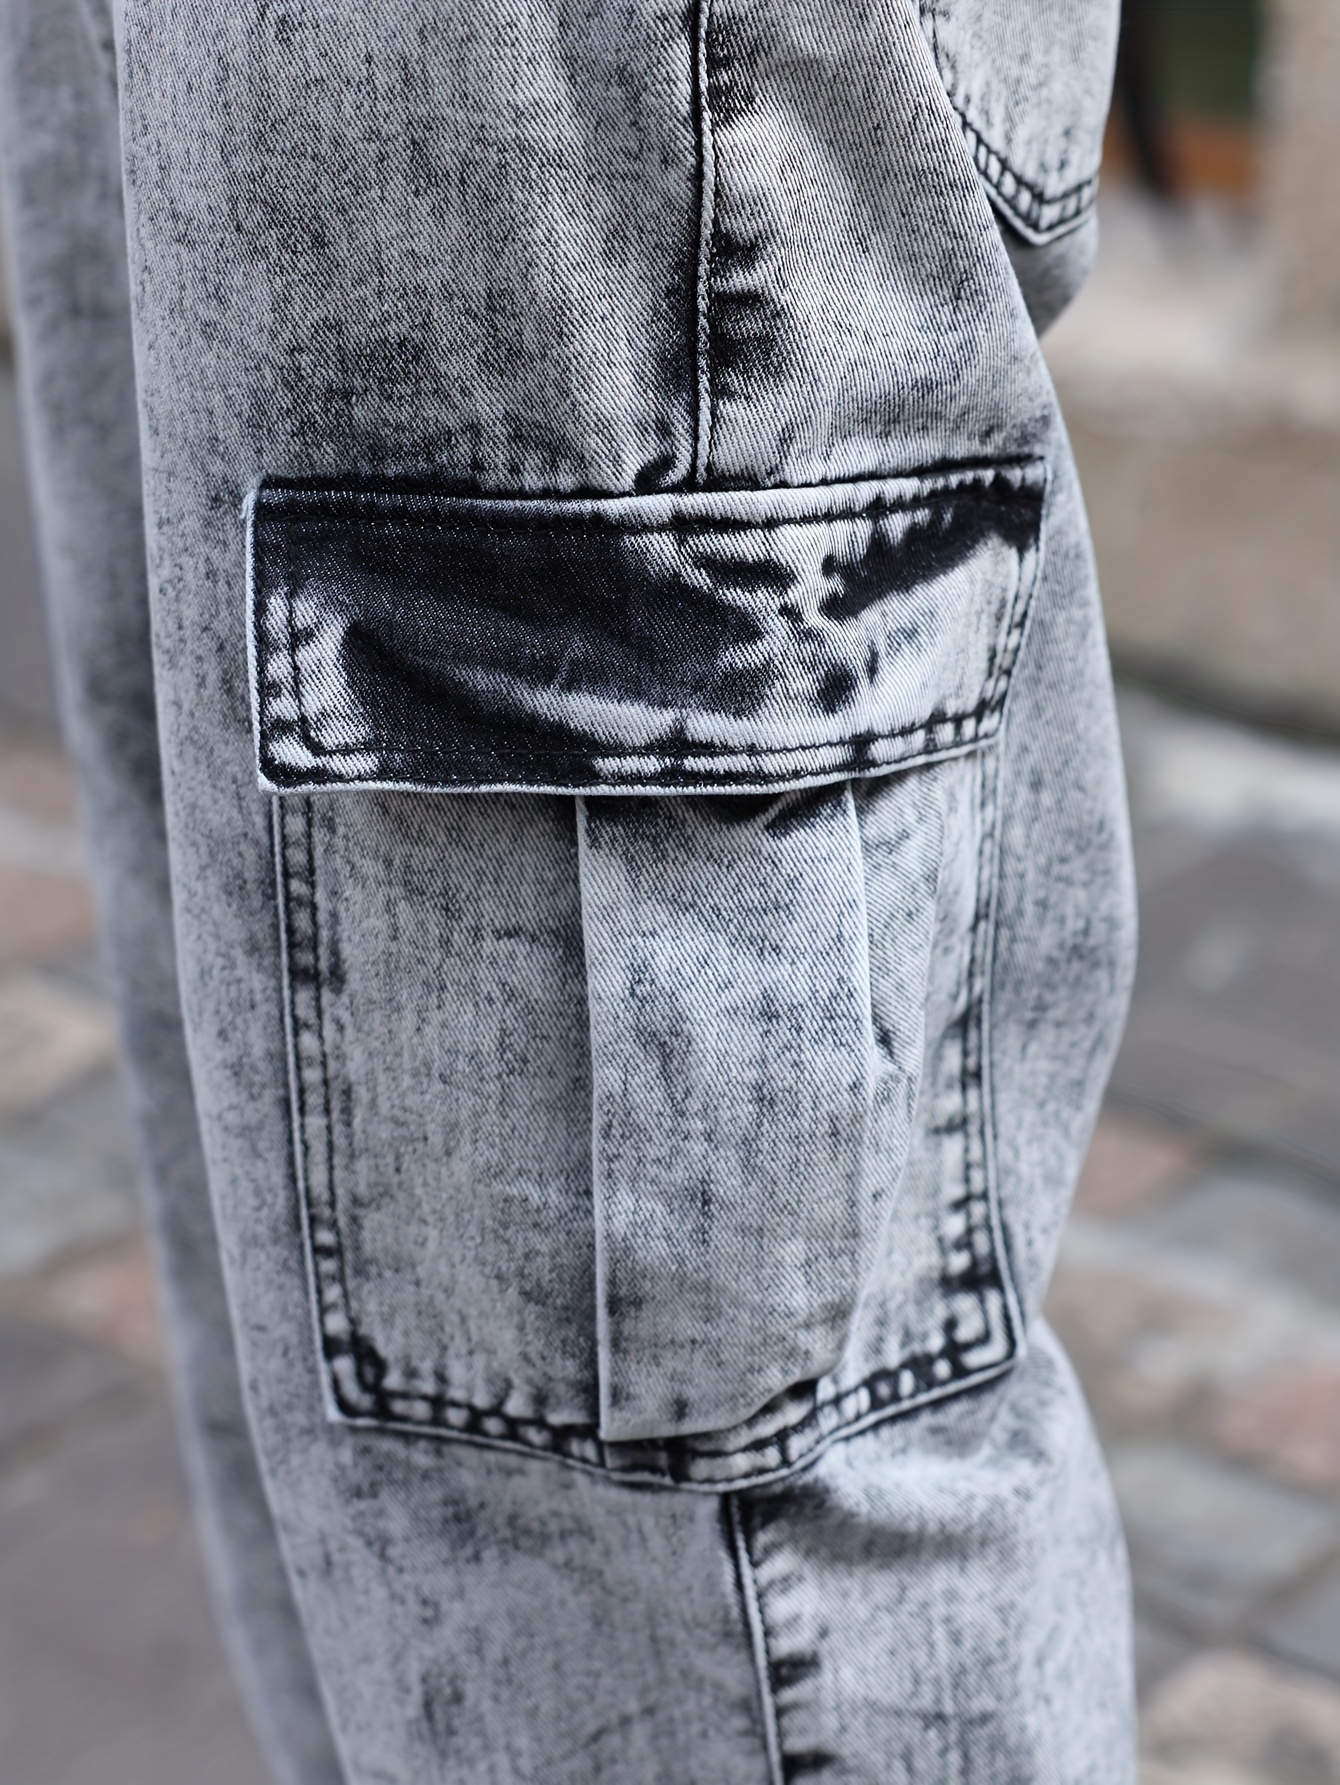 Pantalones vaqueros de trabajo con bolsillos cargo U-Power Jeans JAM - L